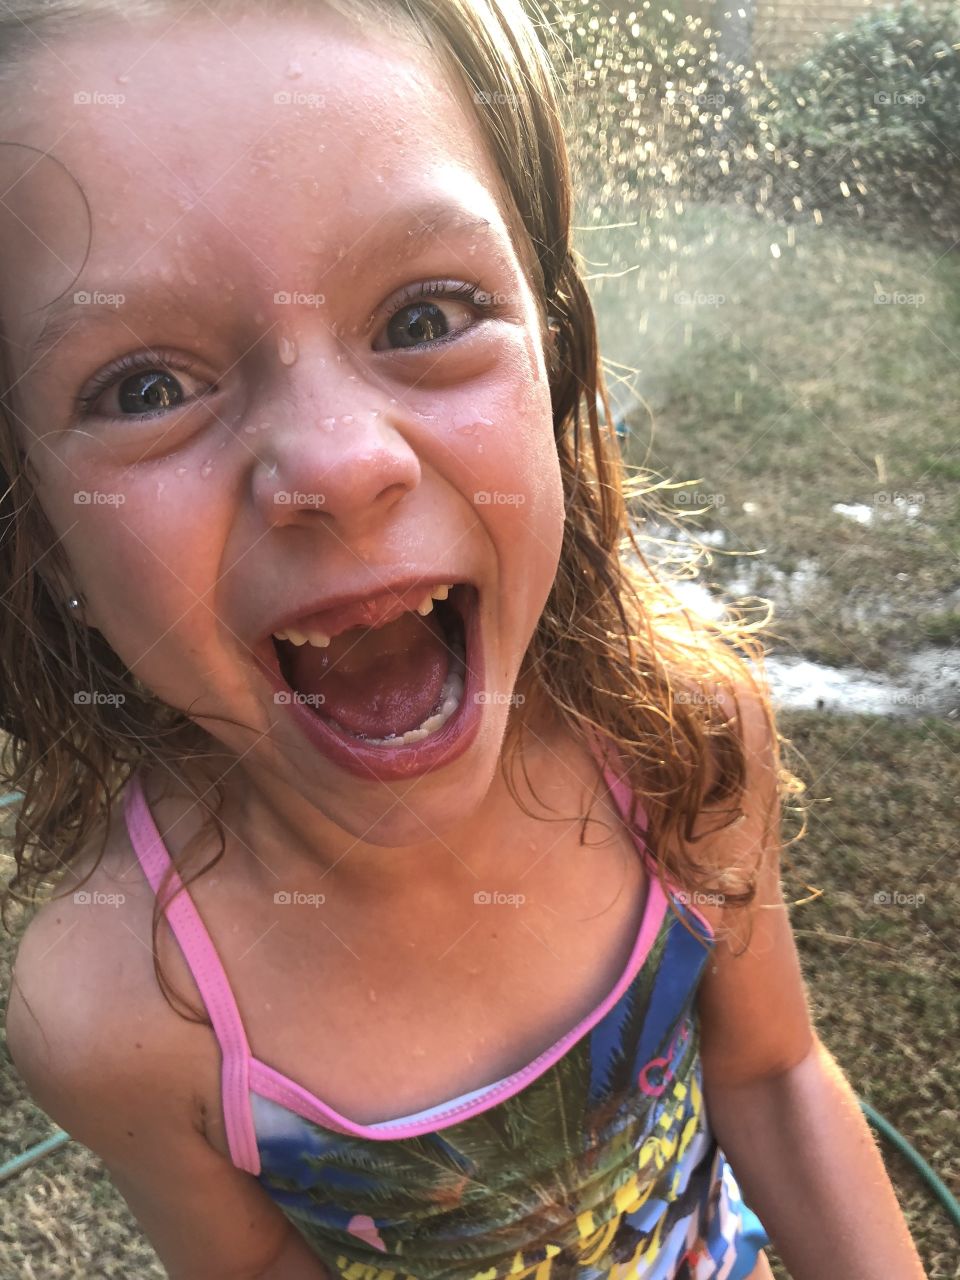 Girl enjoying sprinkler